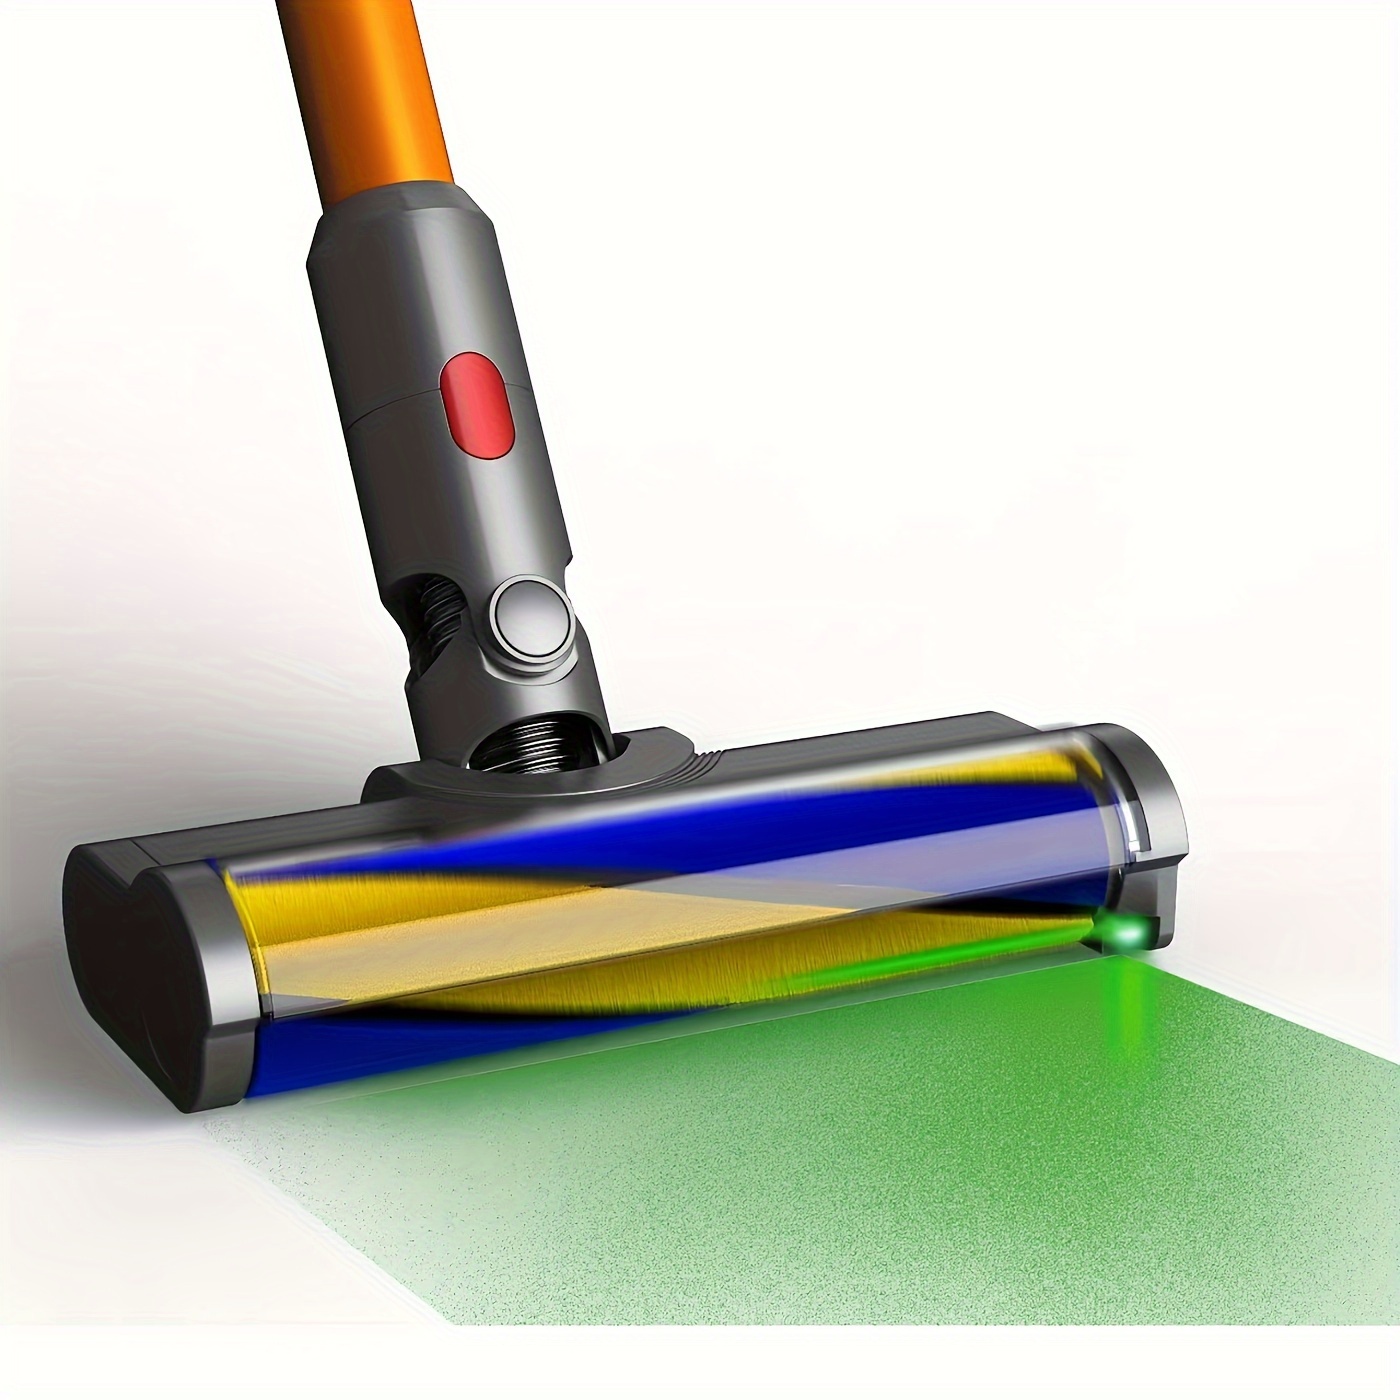 

Green Led Light Vacuum Cleaners Motorized Brush Compatible For V7, V8, V10, V11, V15 Soft Roller Brush Bar With Green Led Headlights Floor Brush Replacement